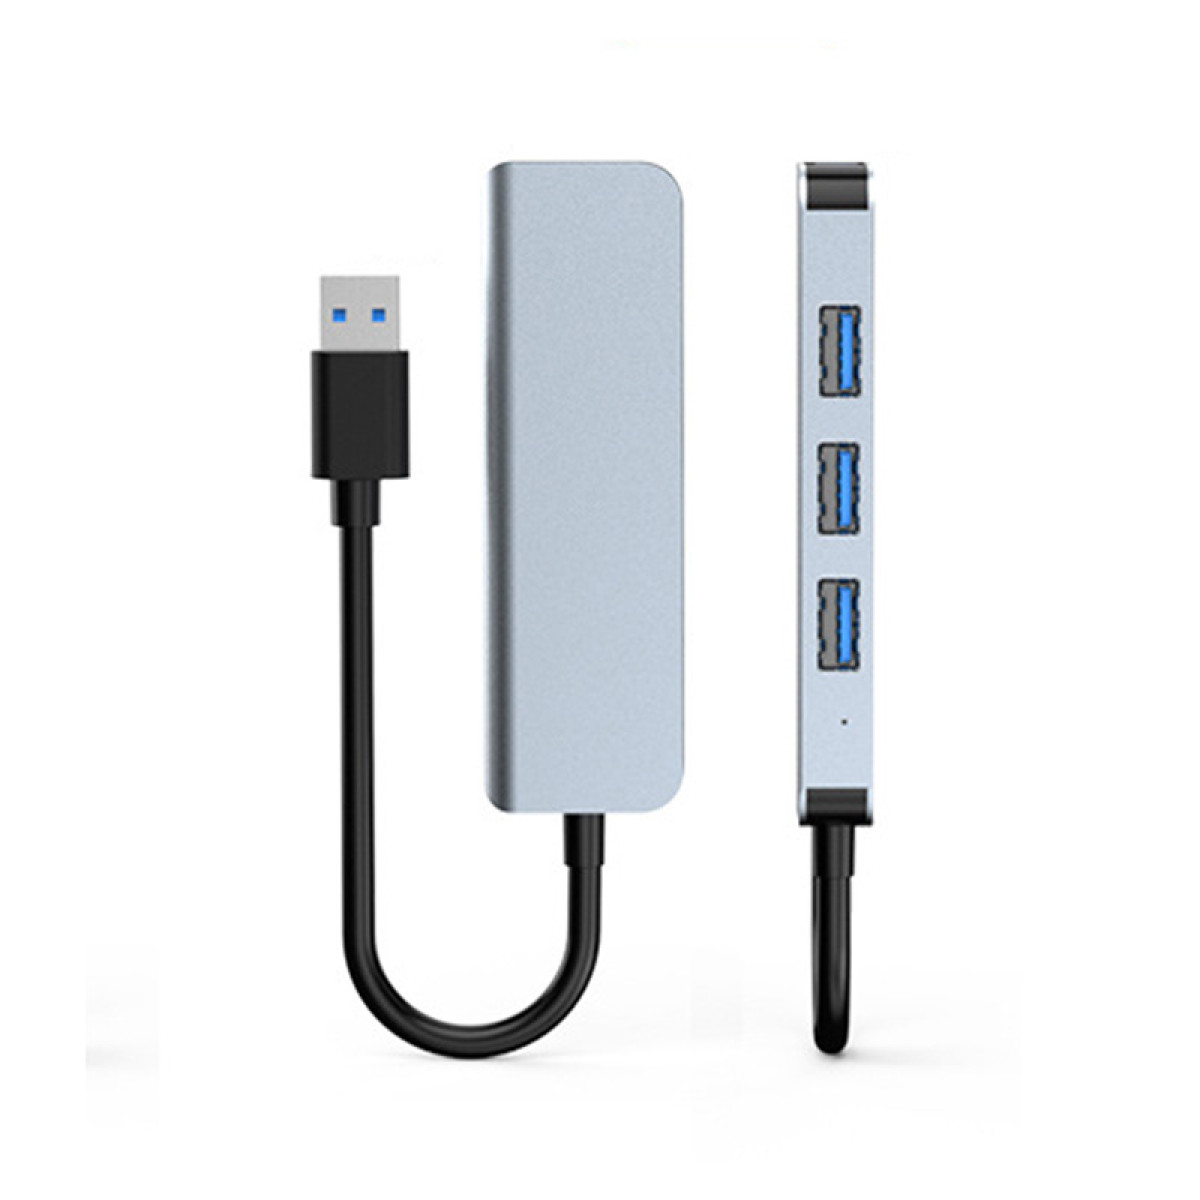 INF USB-Hub Silbergrau USB3.0-Port 1 und USB-Hub, USB2.0-Ports 3 mit